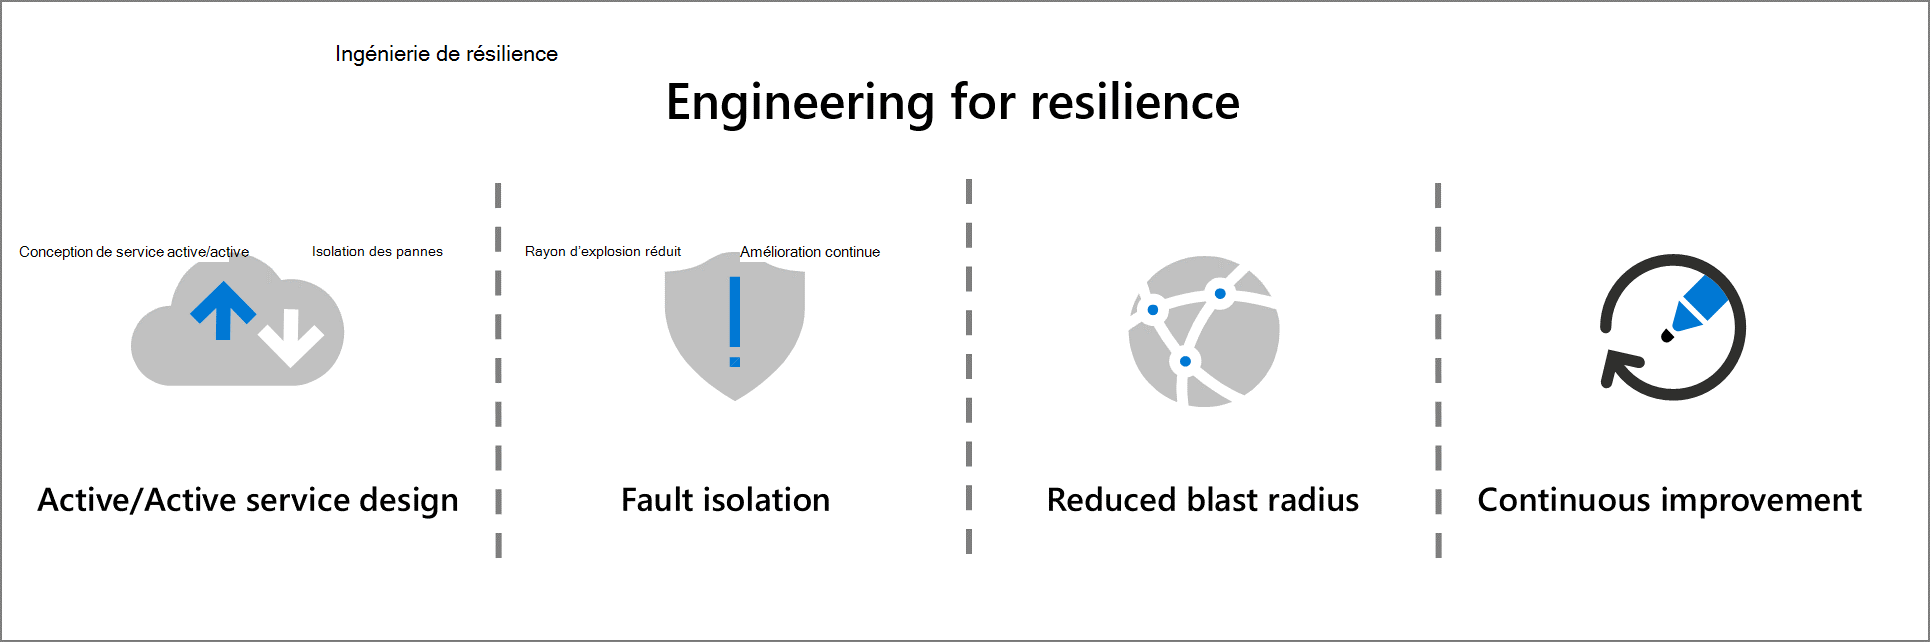 Une représentation graphique de l’ingénierie pour les principes de résilience : conception de service active/active, isolation des pannes, rayon d’explosion réduit et amélioration continue